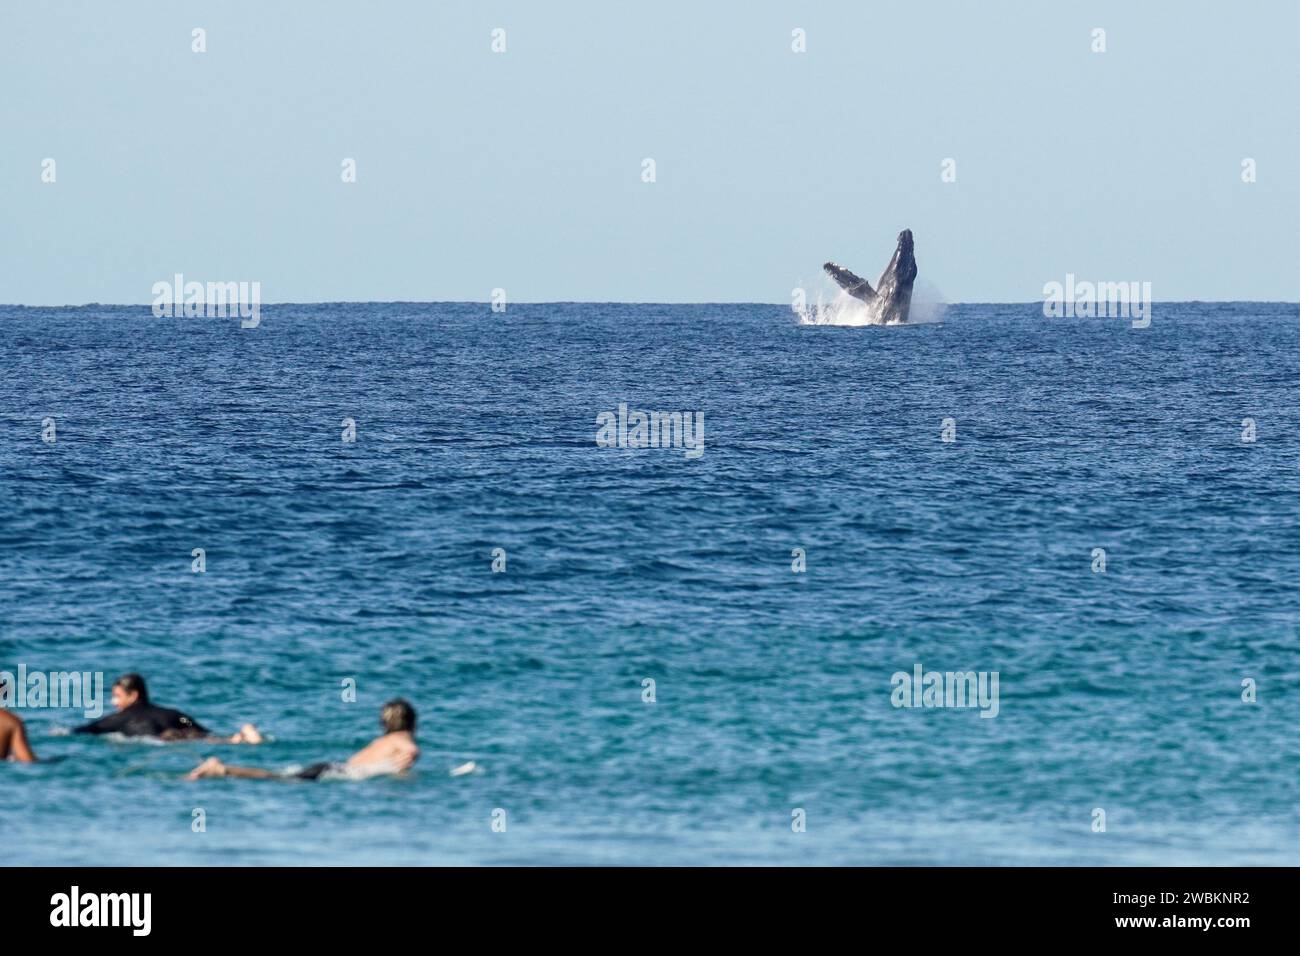 Buckelwal, der vor Surfern aus dem Wasser springt. Wale brechen im Pazifik in Costa Rica, während Surfer paddeln. Stockfoto